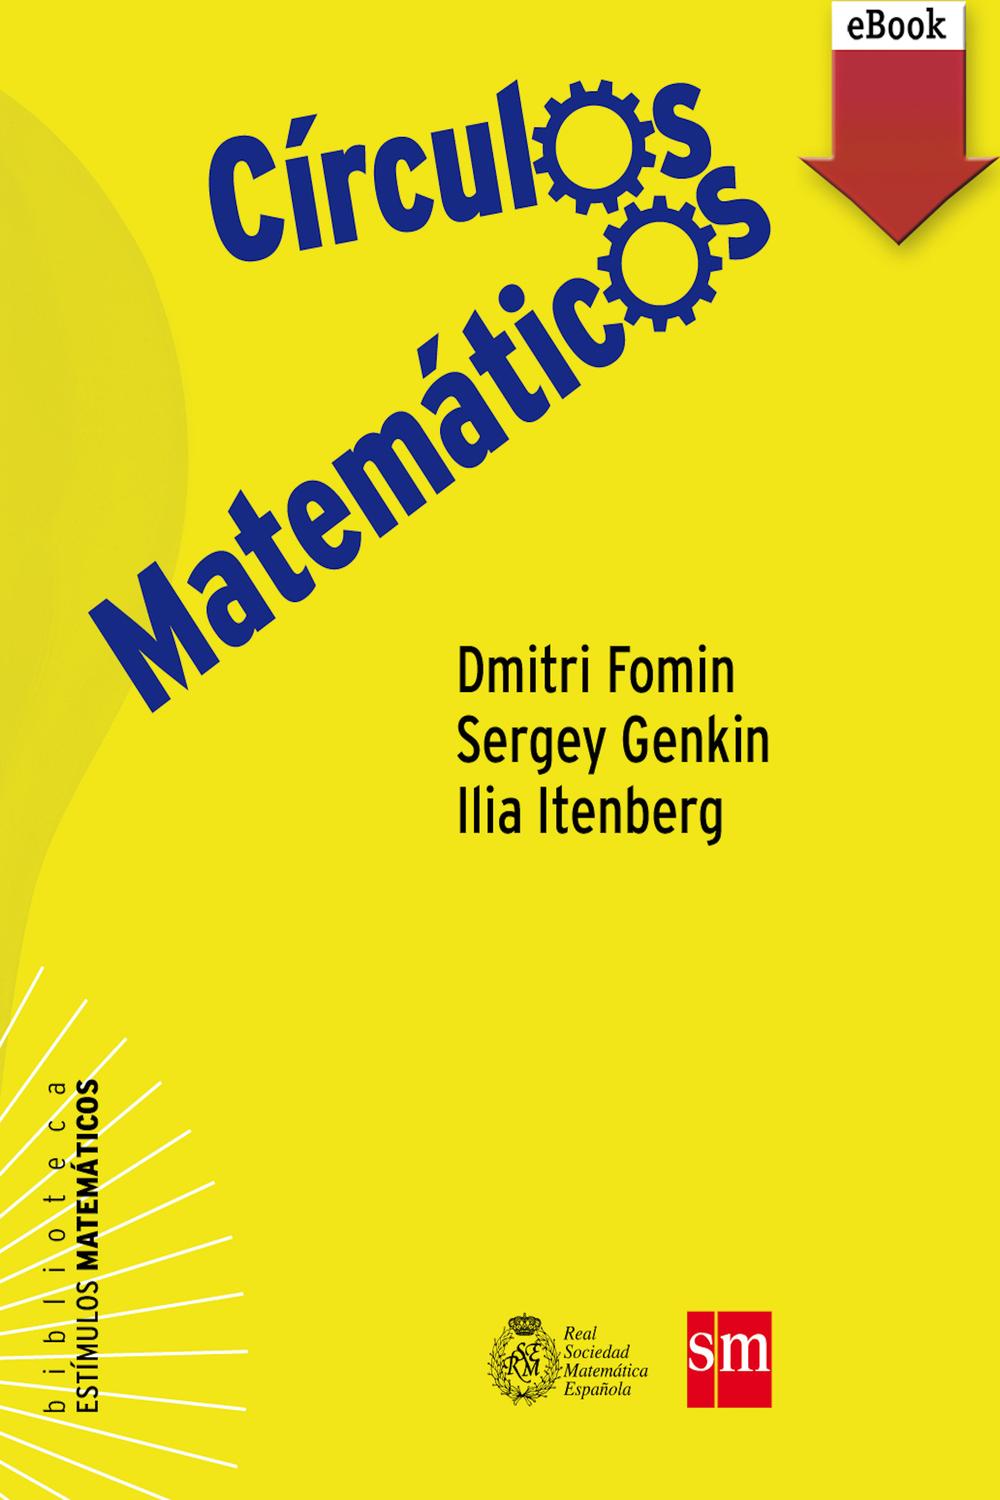 Círculos matemáticos - Dmitry Fomin, Sergey Genkin, Ilia Itenberg, Enrique Hernando Arnáiz